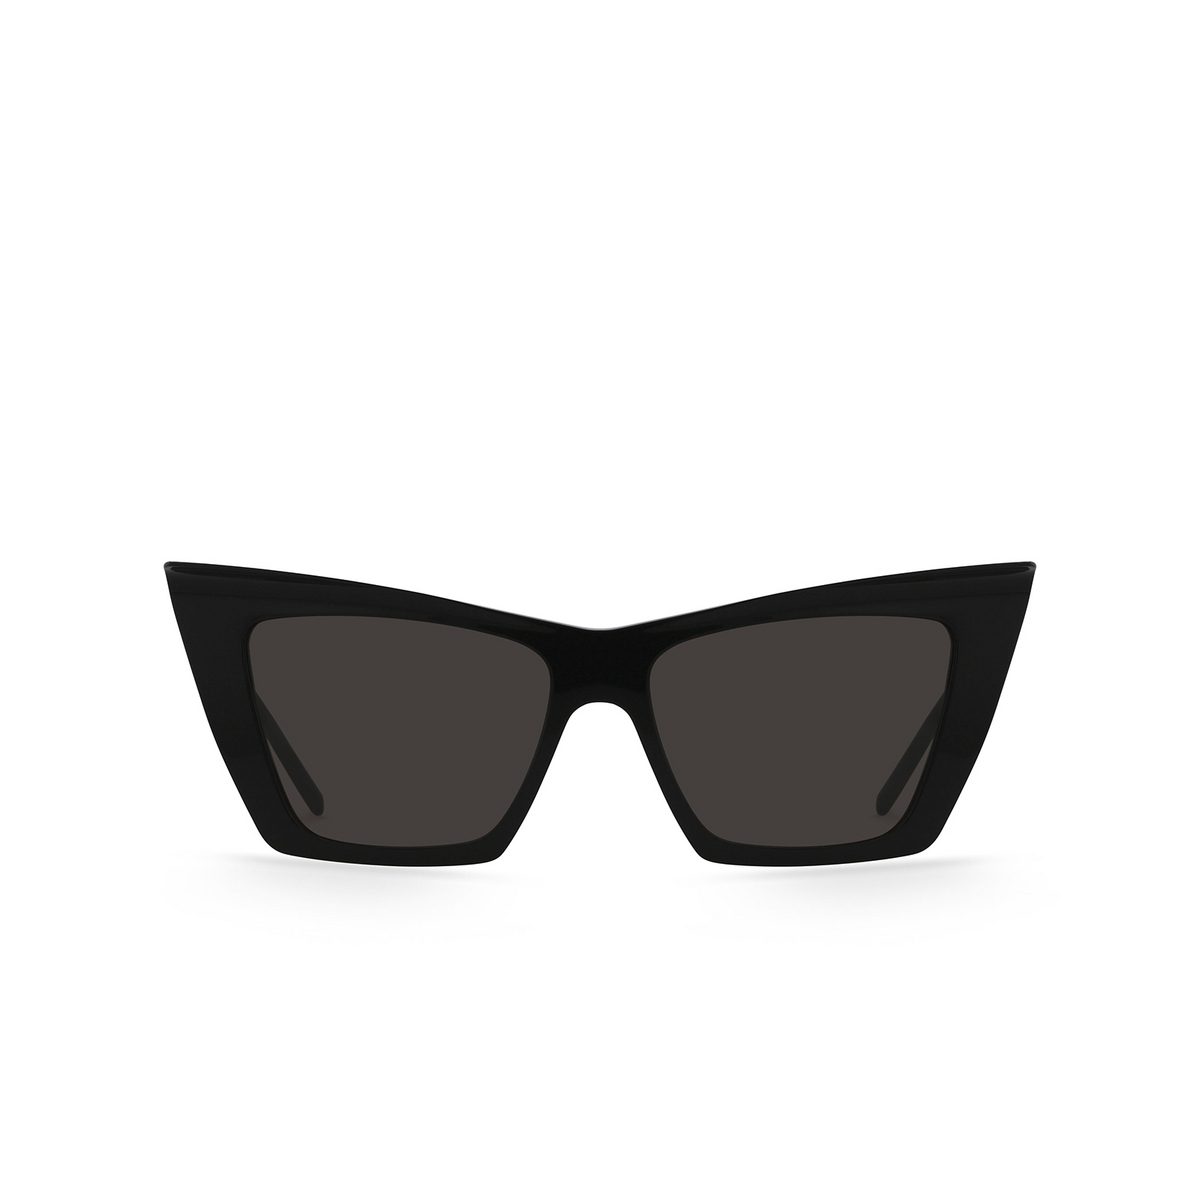 Saint Laurent SL 372 Sunglasses 001 Black - front view